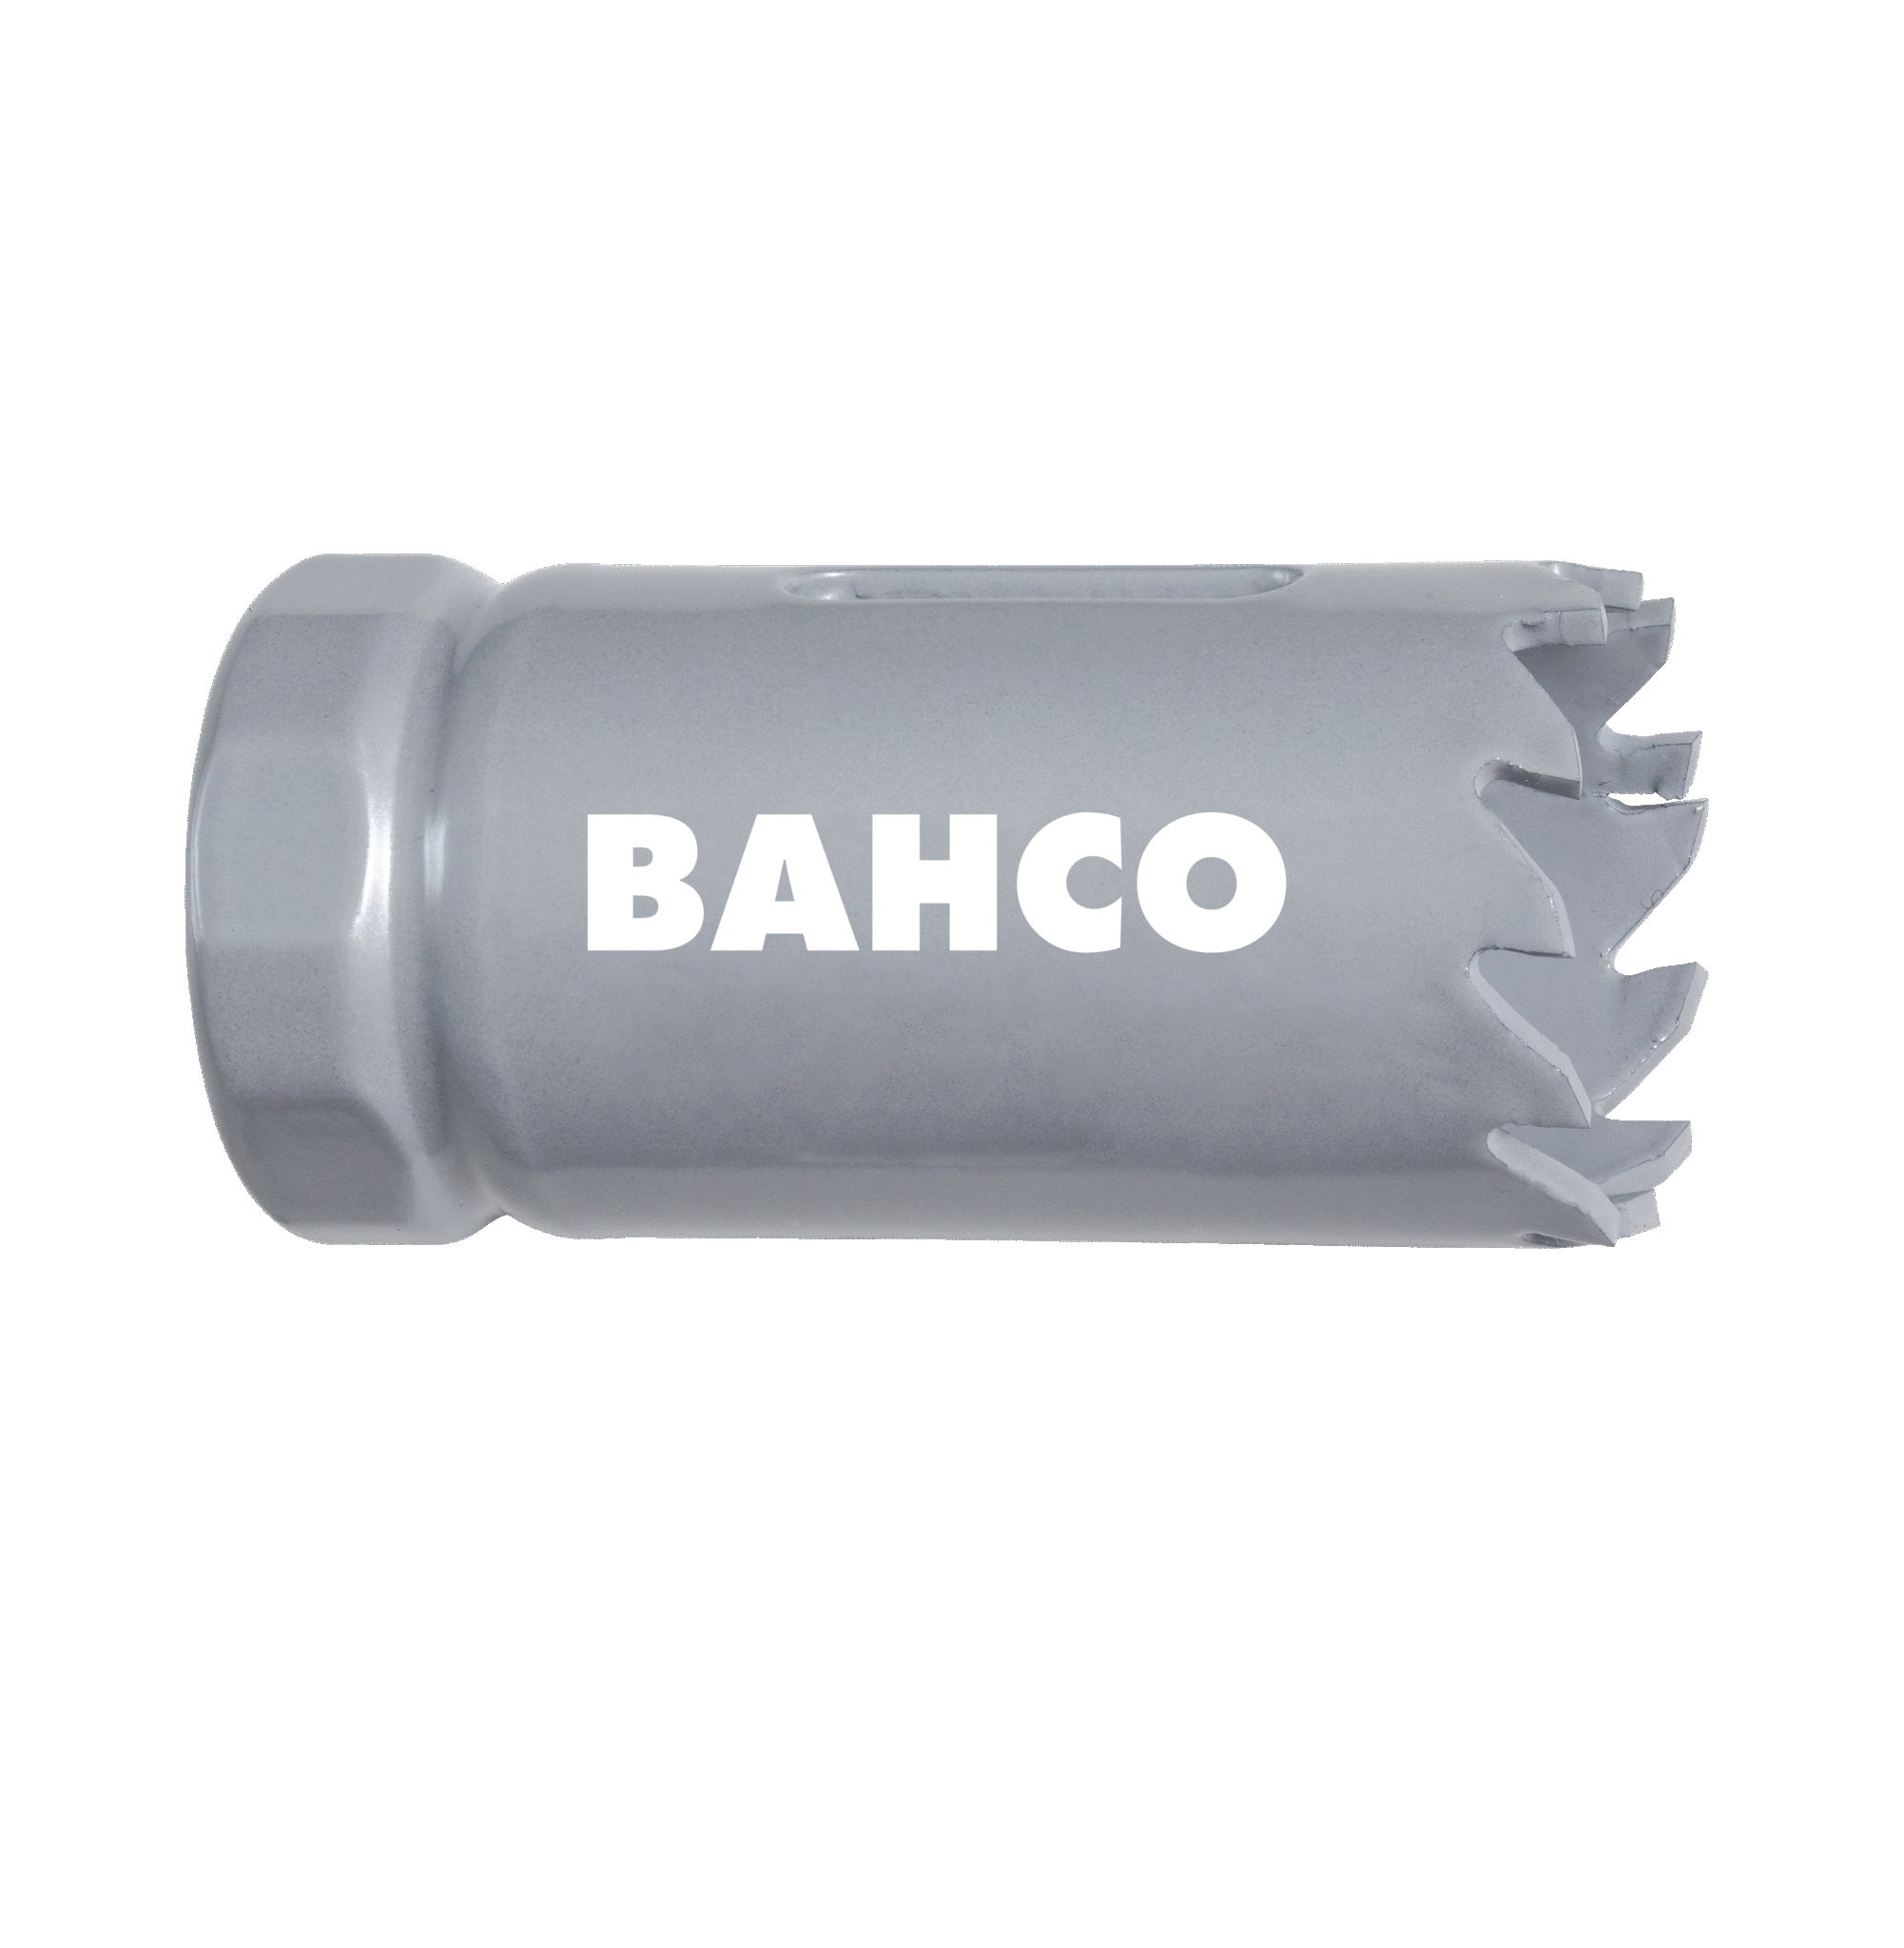 Кольцевые пилы с твердосплавными напайками BAHCO 3832-17